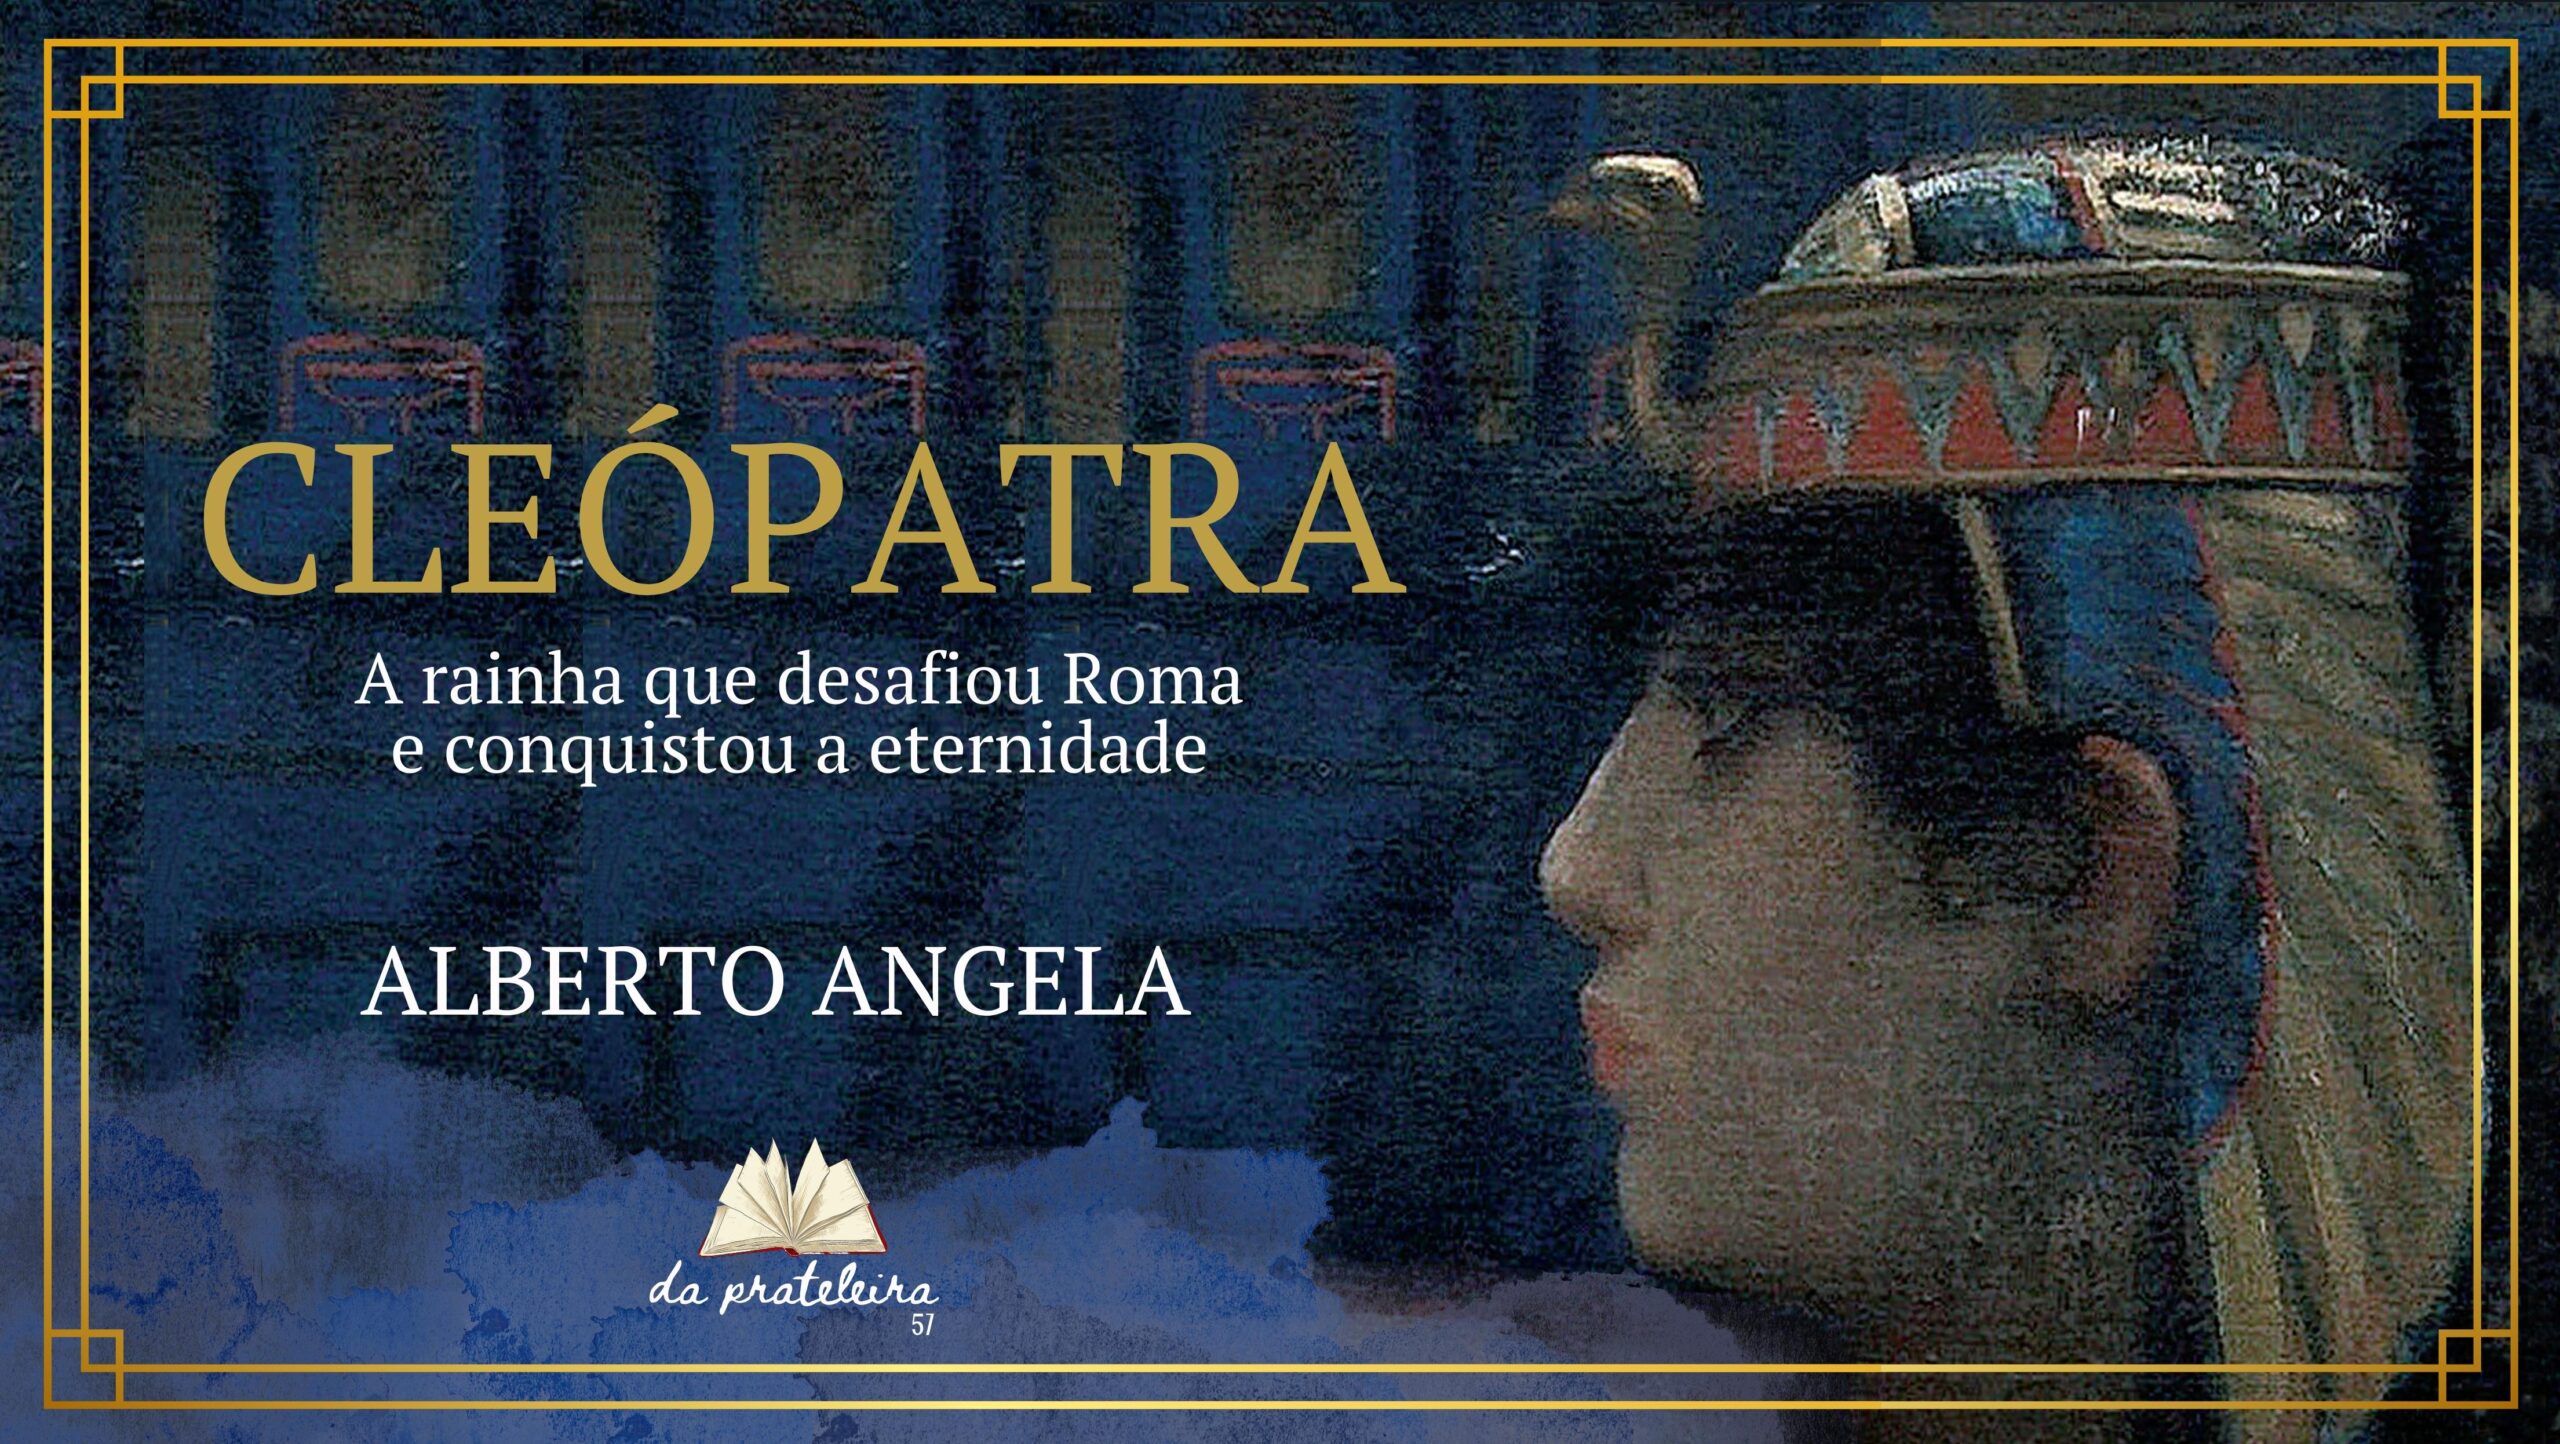 Fundo com pintura de Cleópatra de perfil. Na frente o título do episódio "Cleópatra. A rainha que desafiou Roma e conquistou a eternidade".